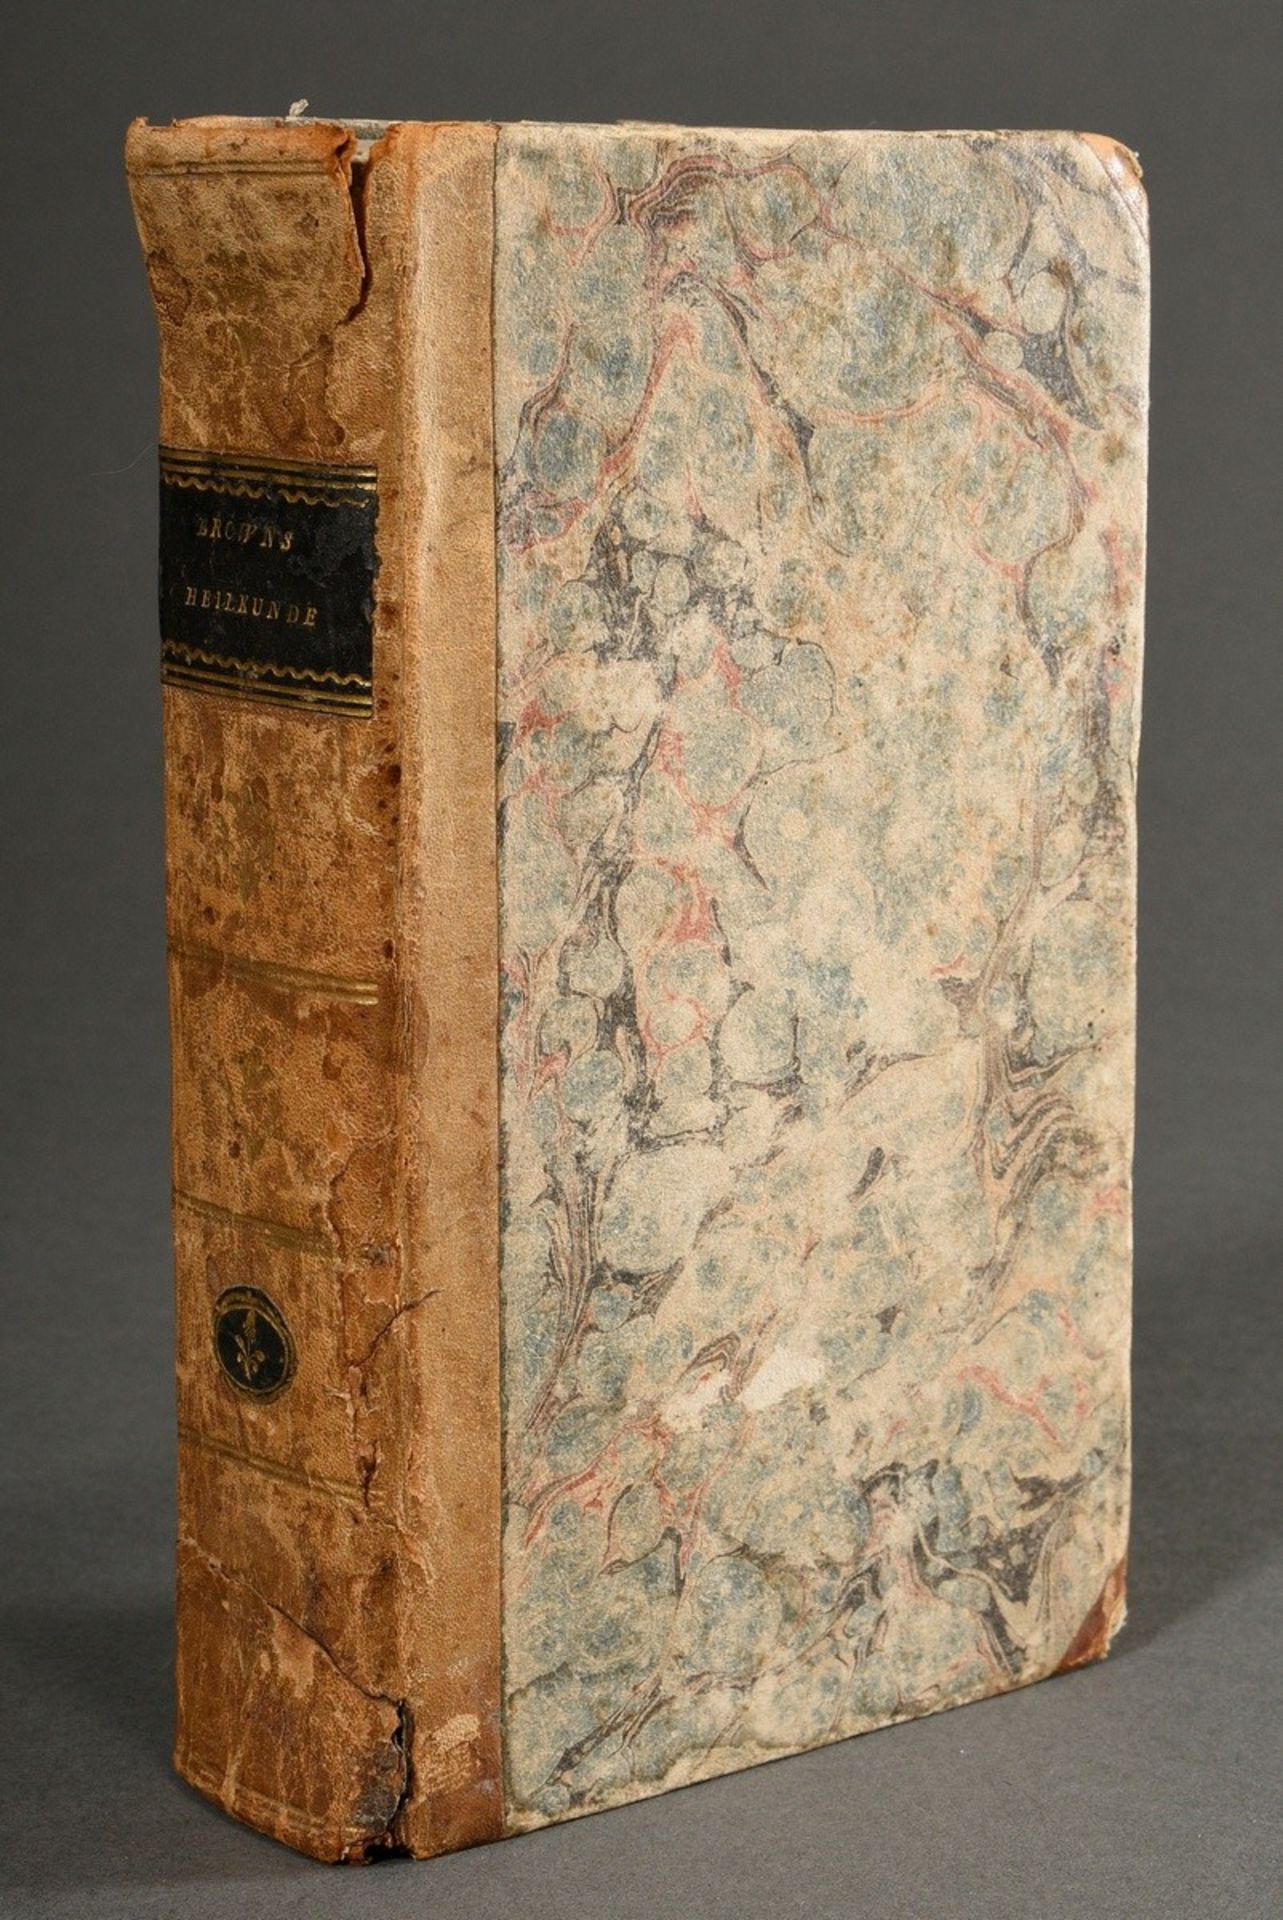 Volume "John Brown's System der Heilkunde", Vienna 1807, 3rd edition, half leather binding, 536 p., - Image 2 of 5